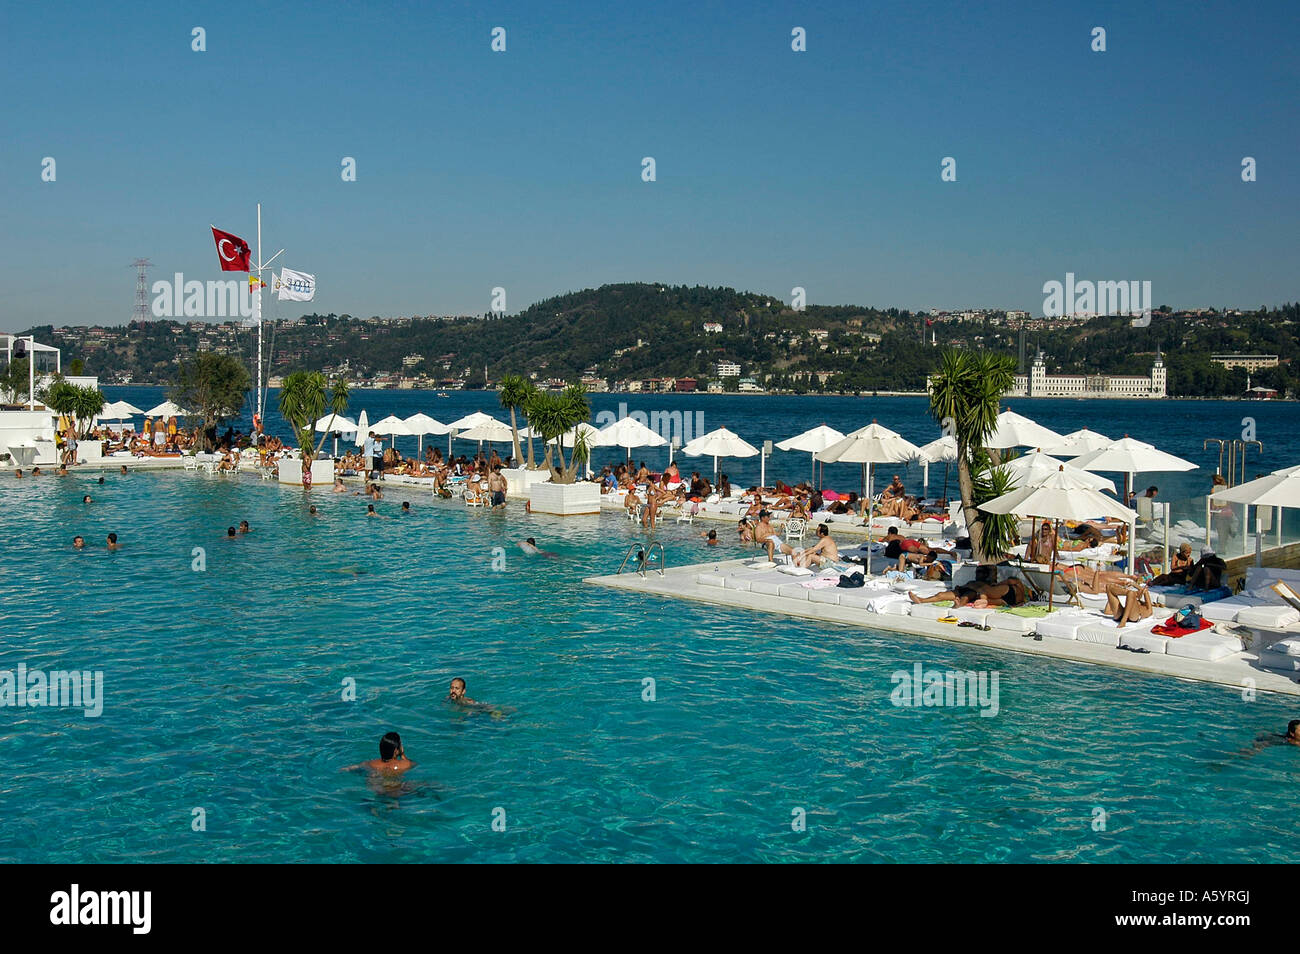 People swimming in Galatasaray Island Bosporus Istanbul Stock Photo